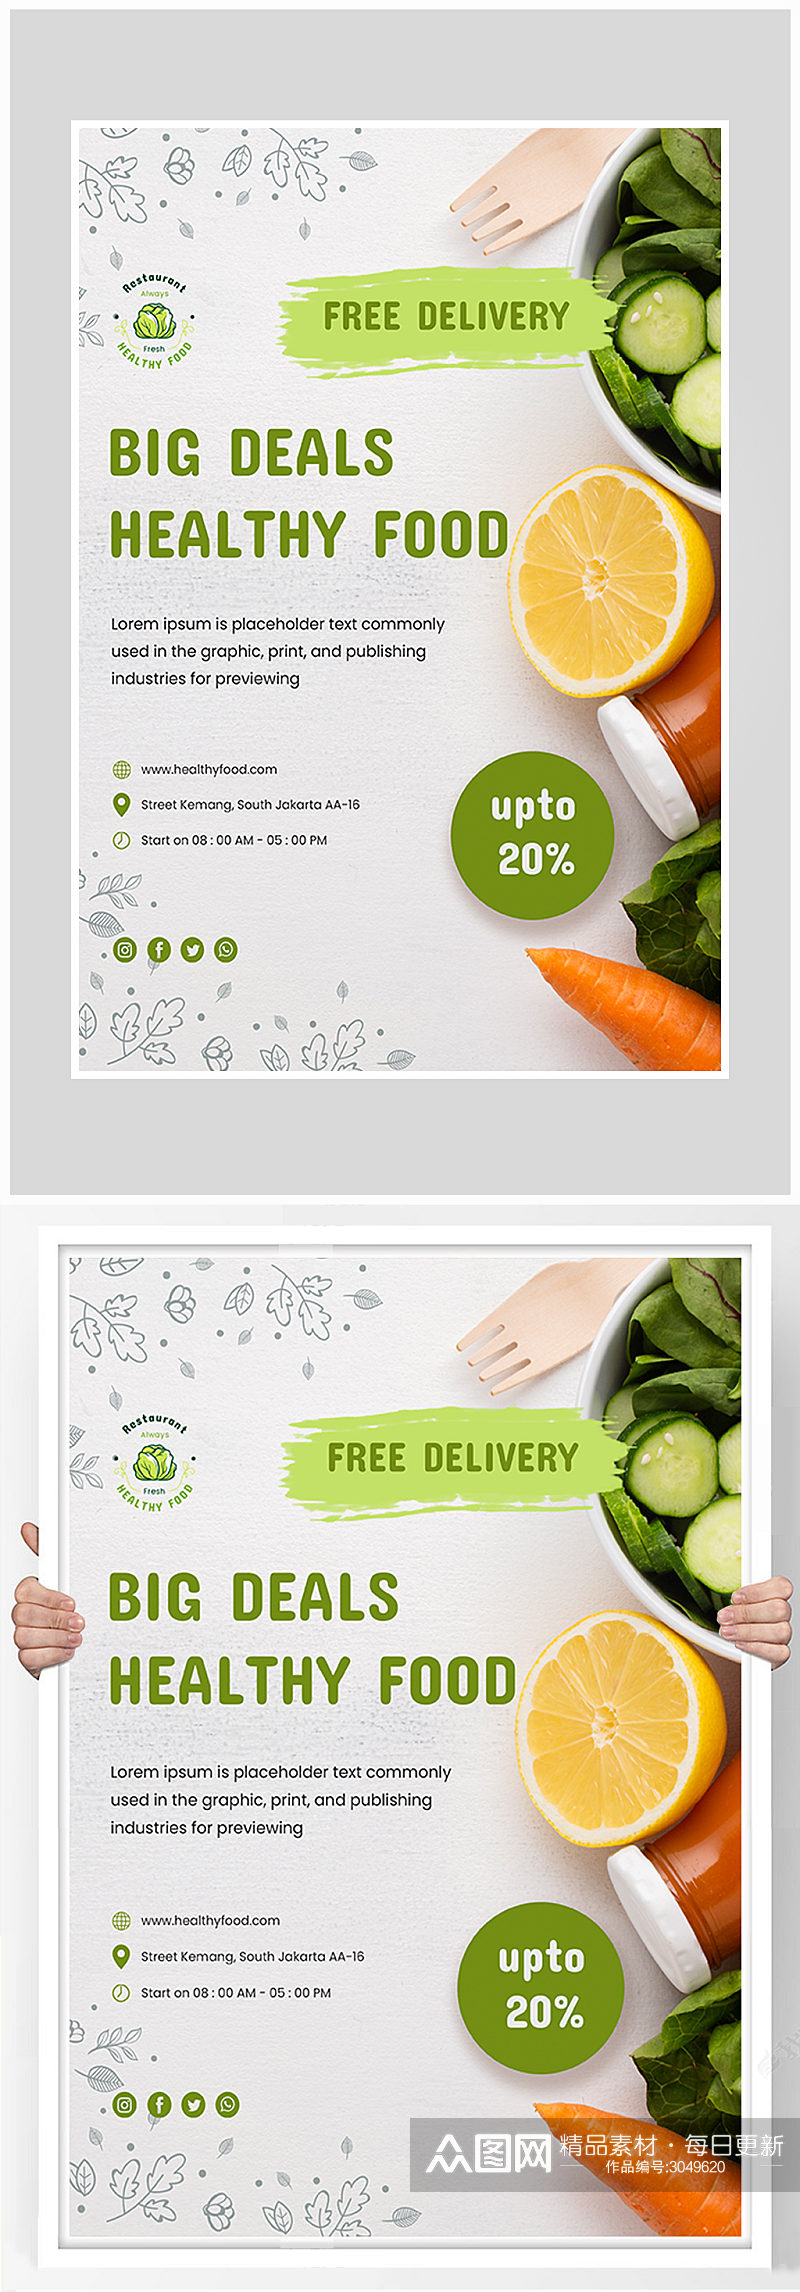 绿色蔬菜健康生活海报设计素材